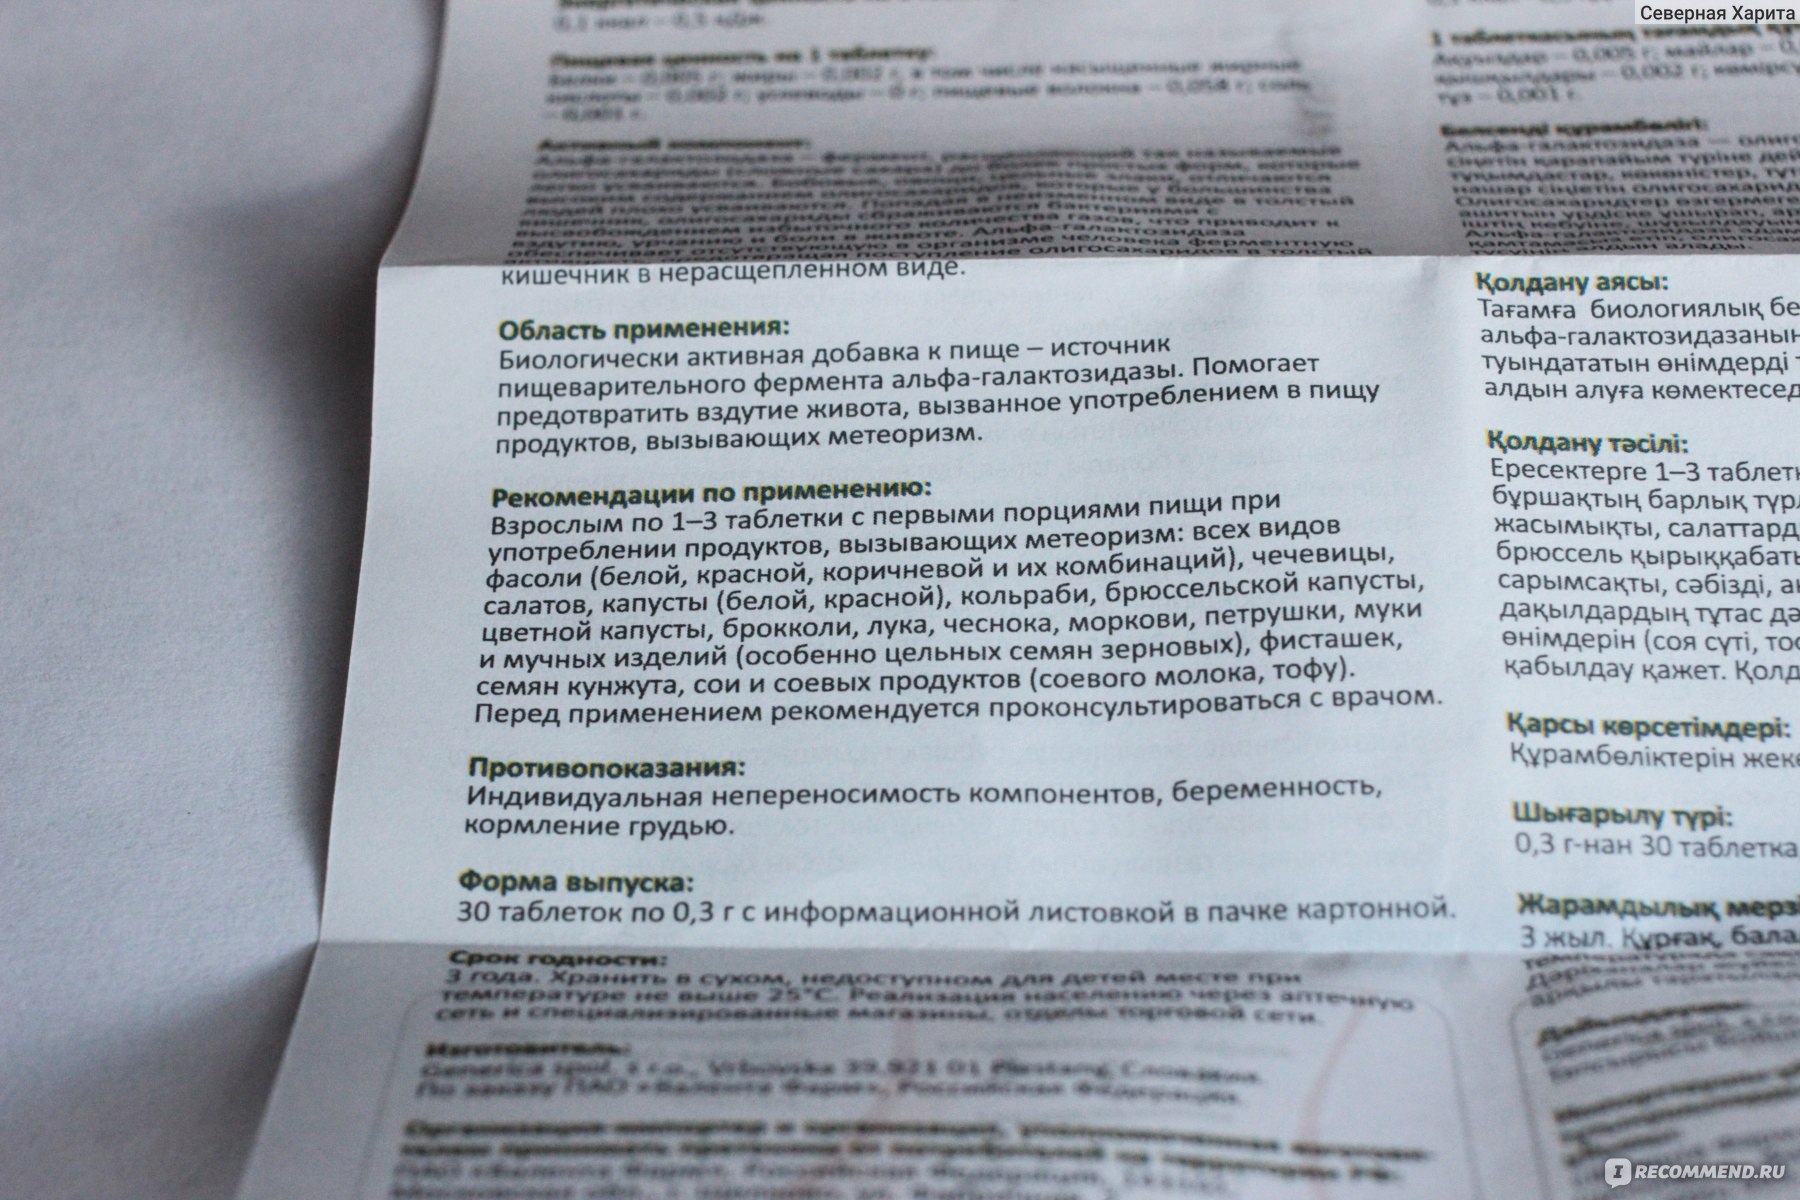 Препарат: орликс в аптеках москвы